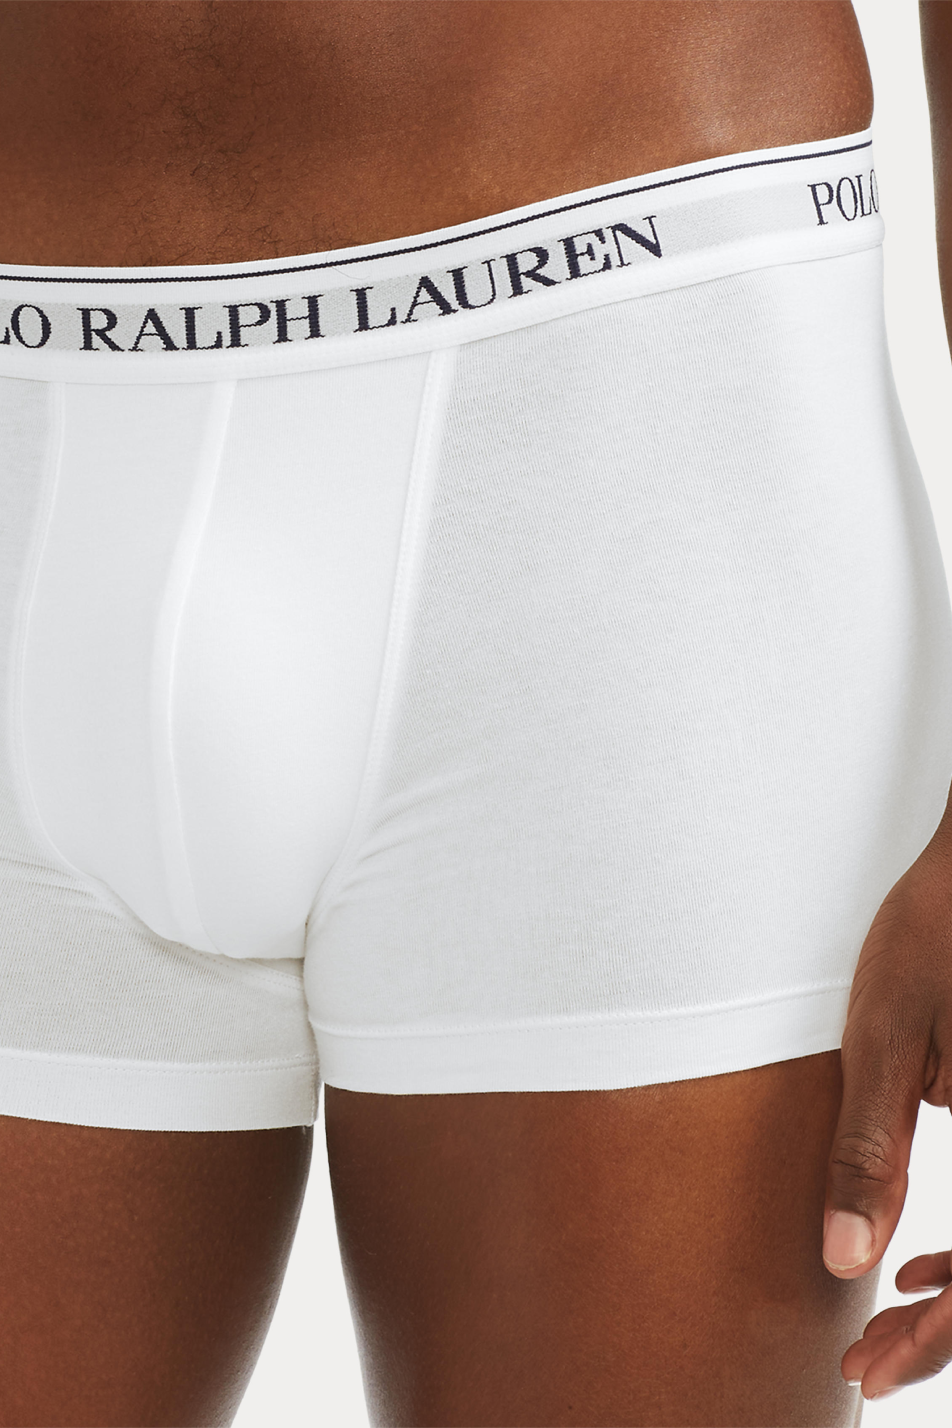 Polo Ralph Lauren 3 Pack Classic Men's Trunks